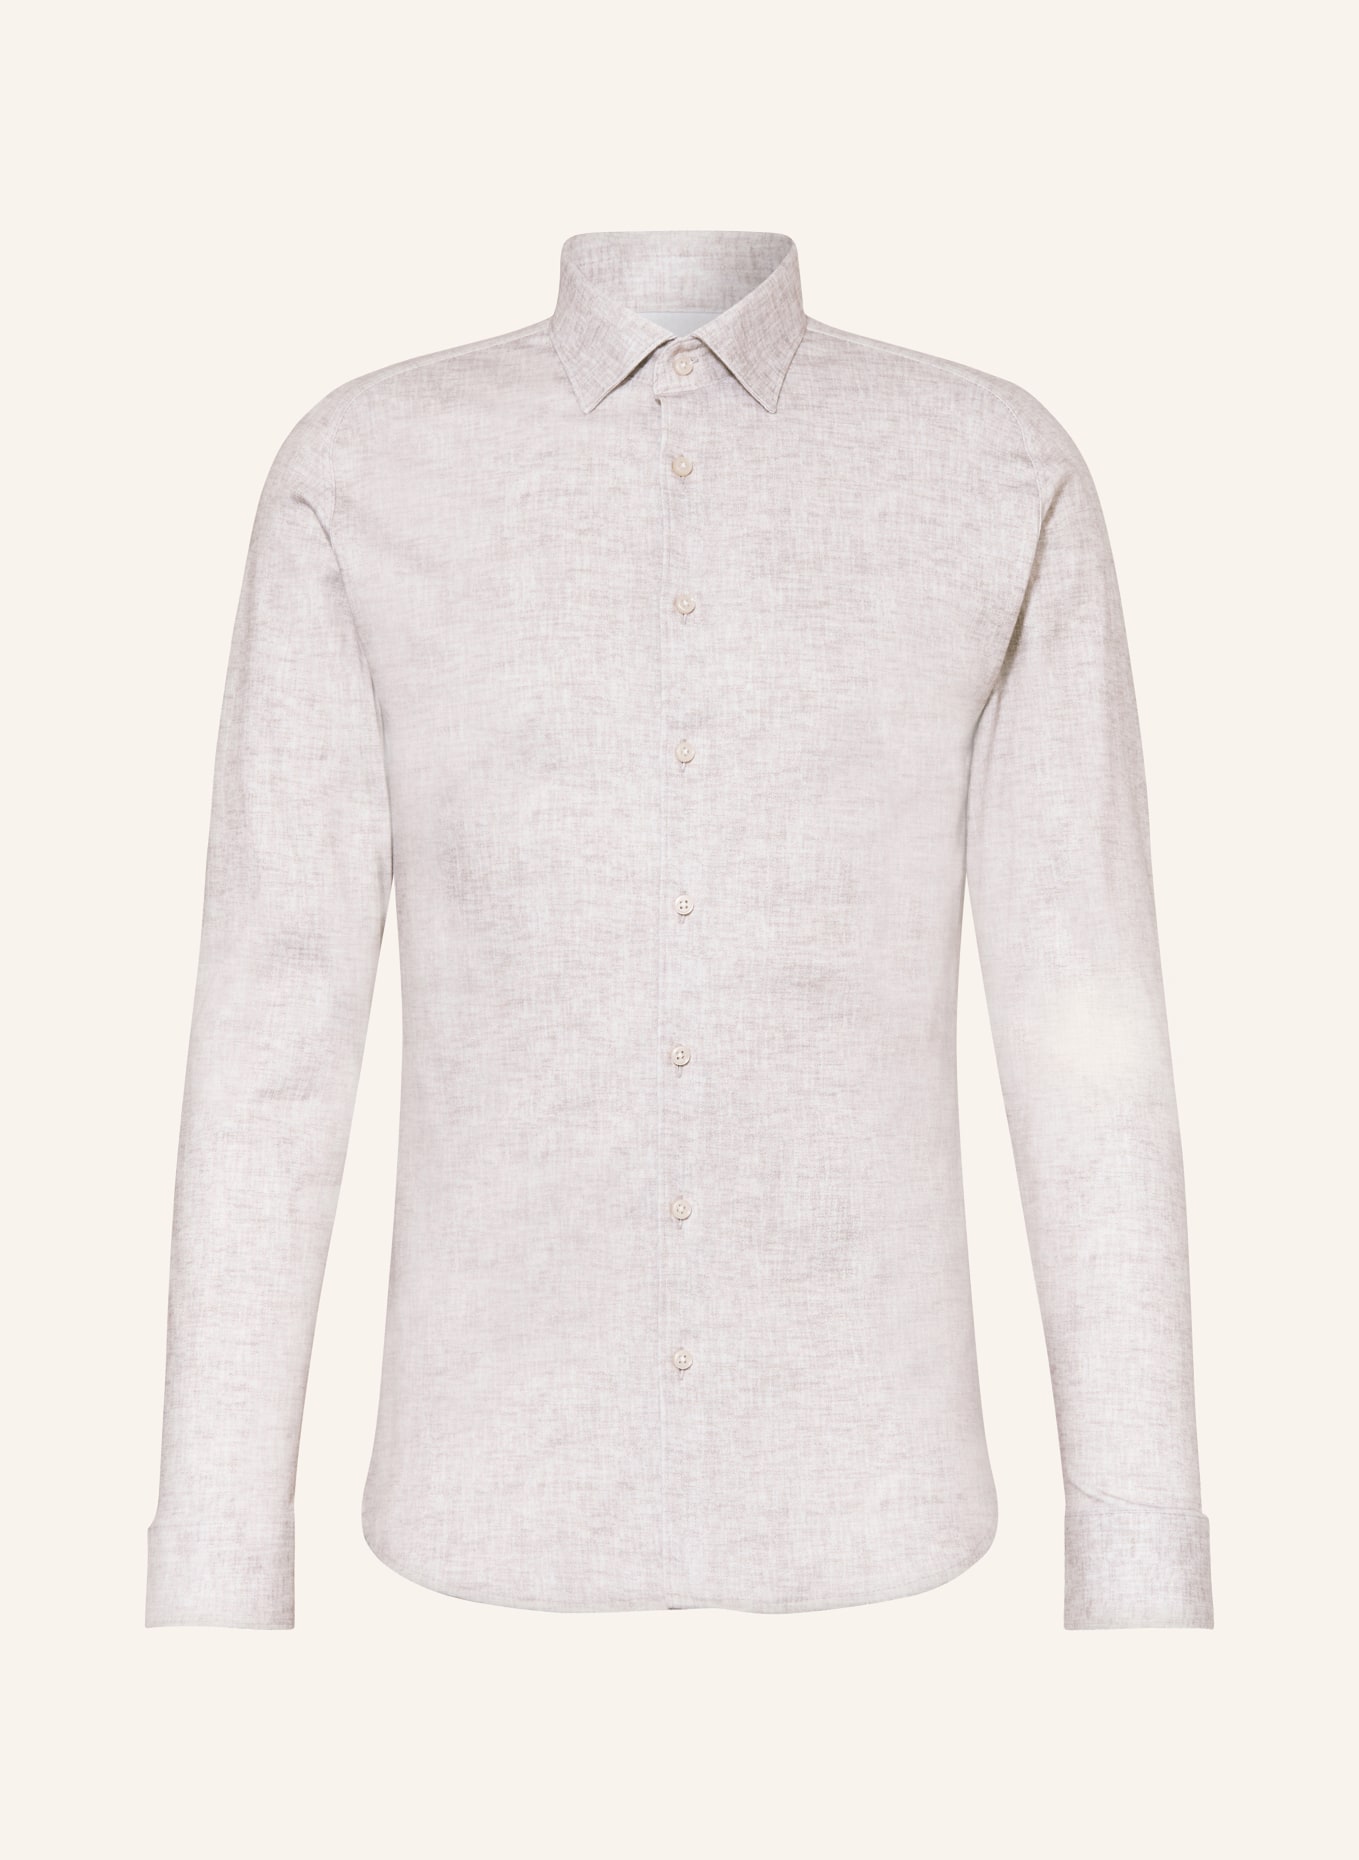 DESOTO Jersey shirt slim fit, Color: 816 canvas linen (Image 1)